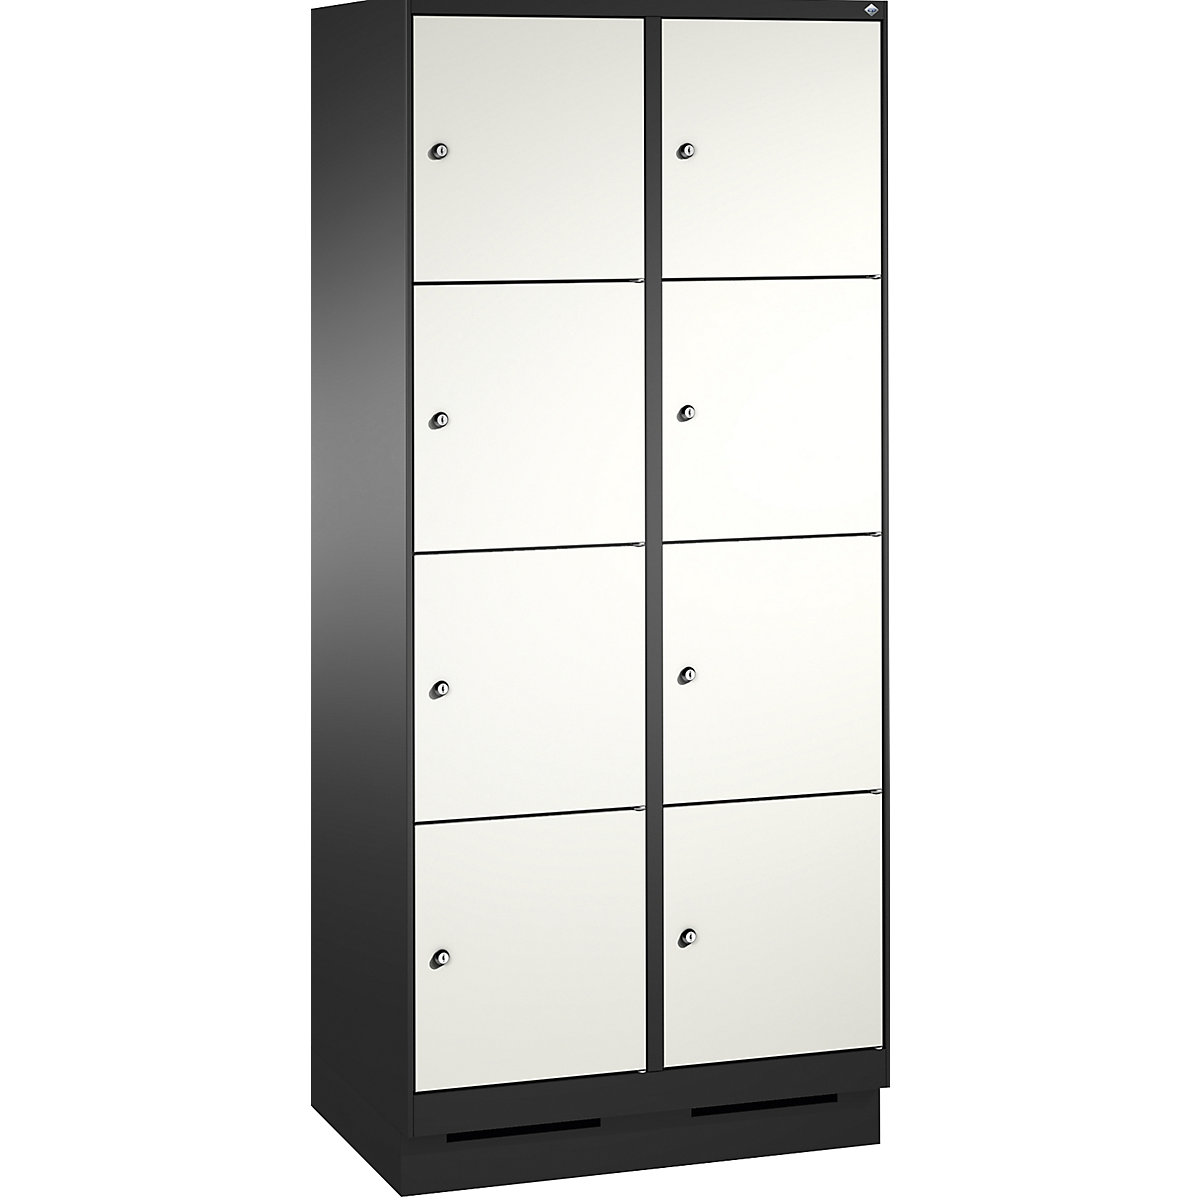 Armoire à casiers sur socle EVOLO – C+P, 2 compartiments, 4 casiers chacun, largeur compartiments 400 mm, gris noir / blanc trafic-2